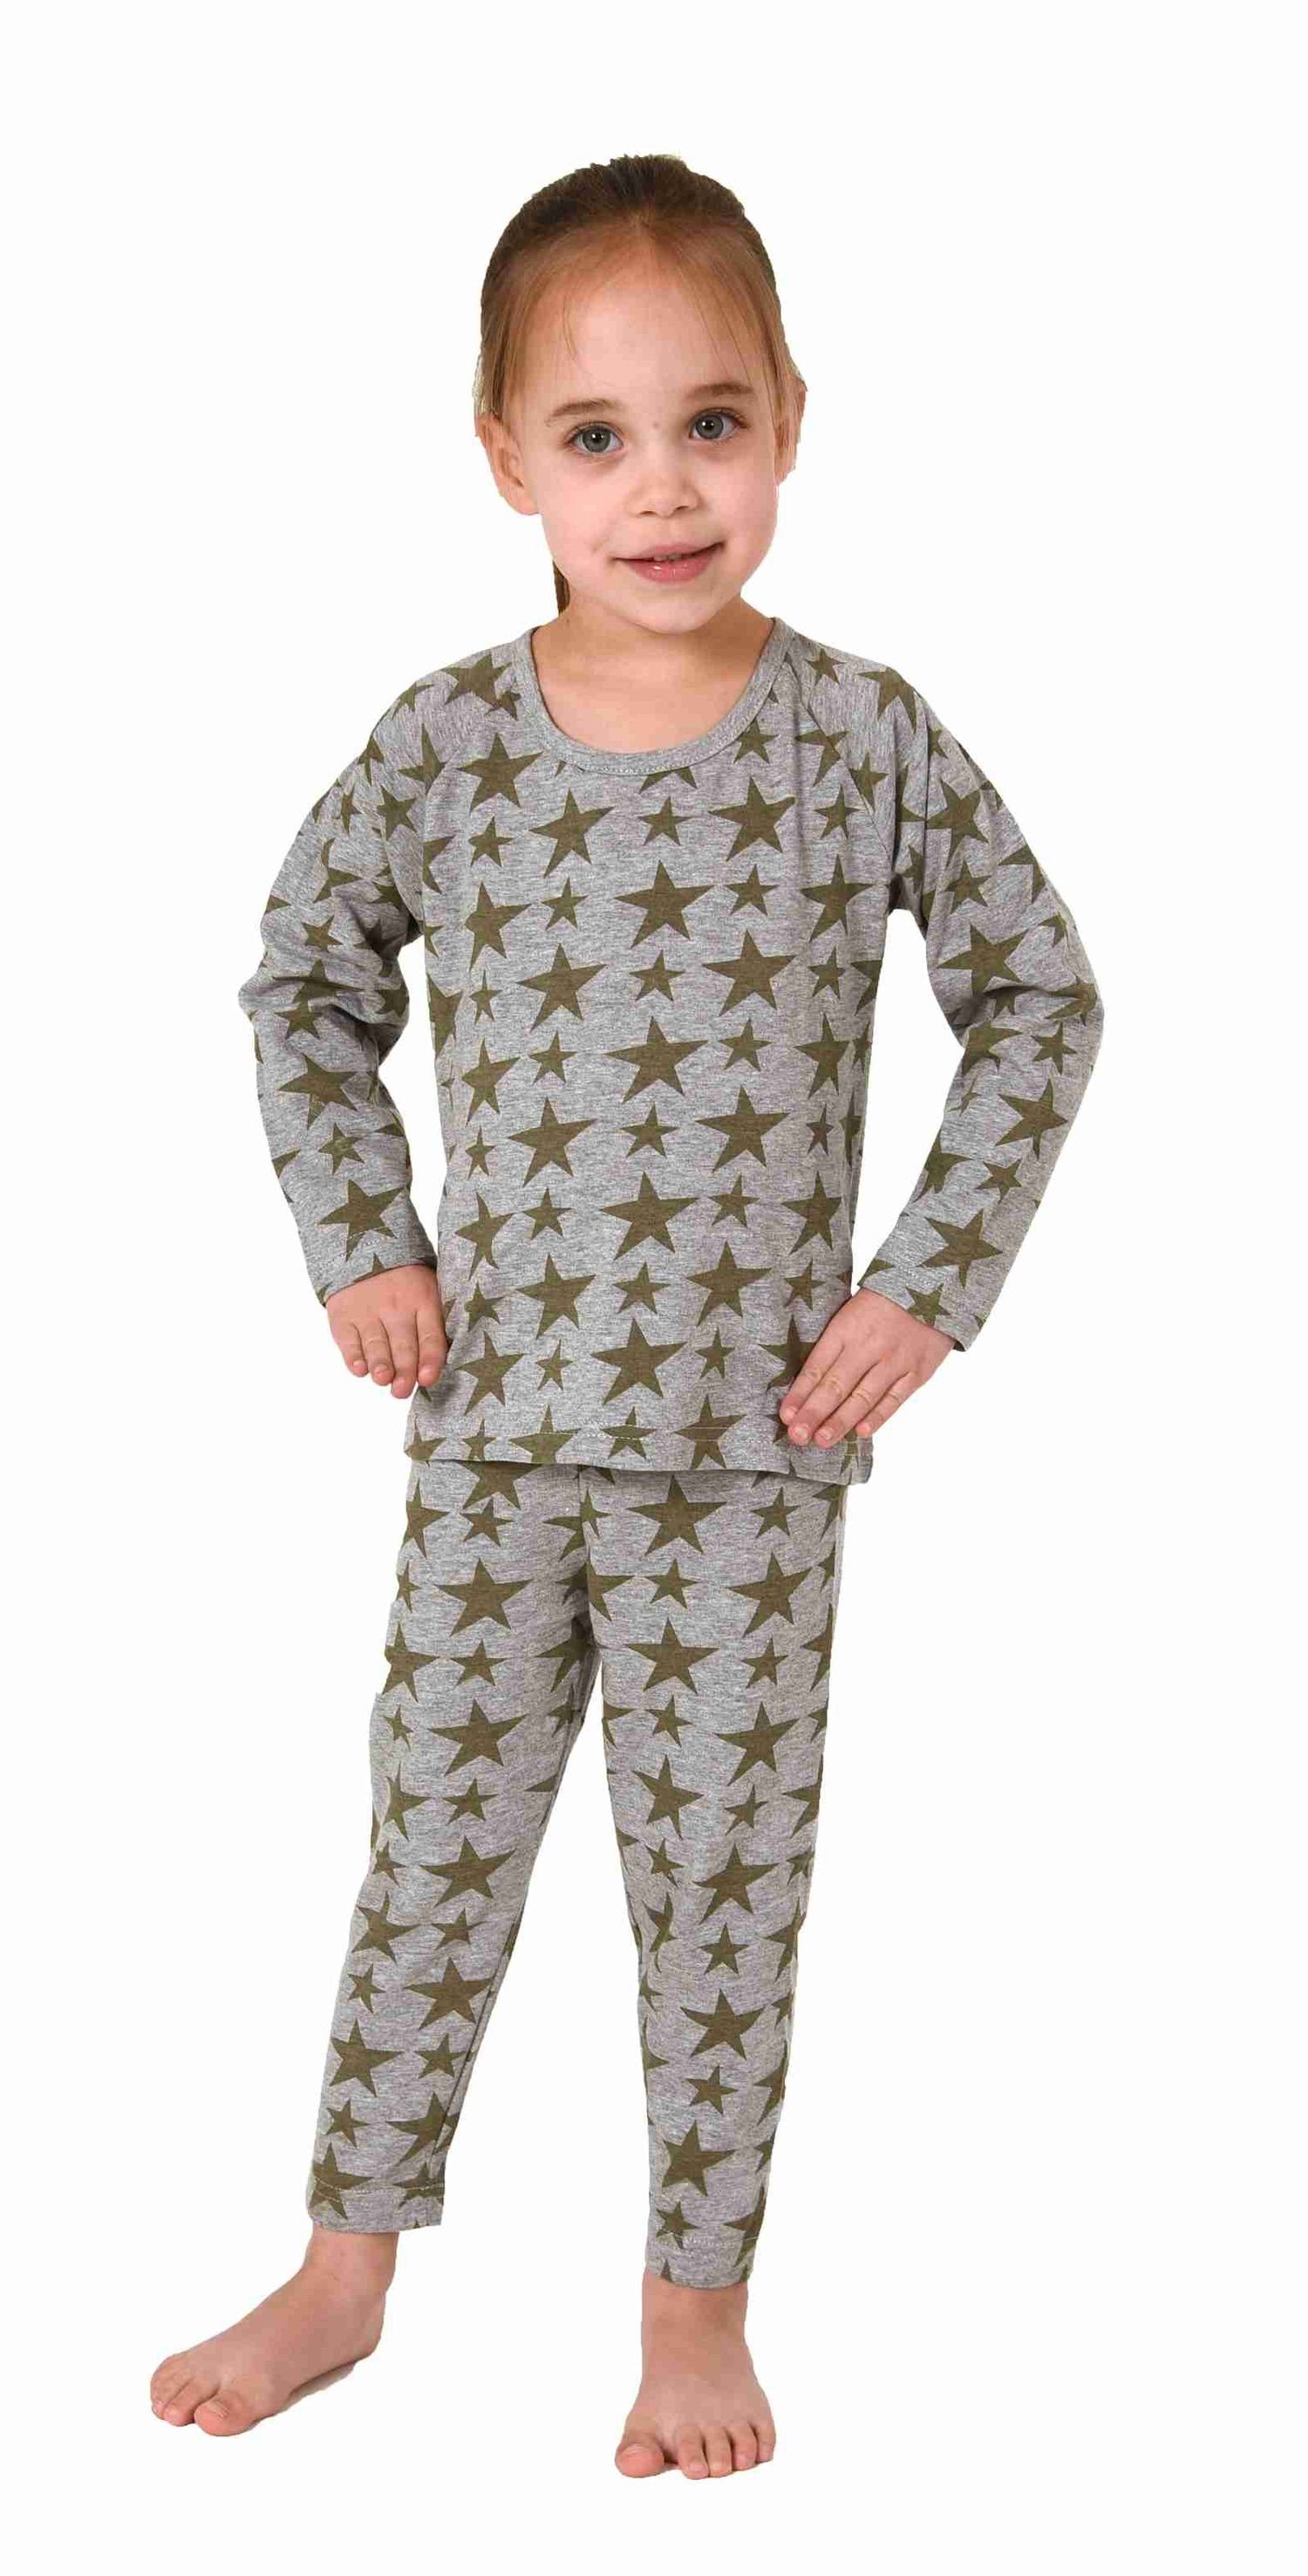 Reguläre Ware Normann Pyjama Wunderschöner Kleinkinder Sterne in langarm Schlafanzug Optik grau Mädchen